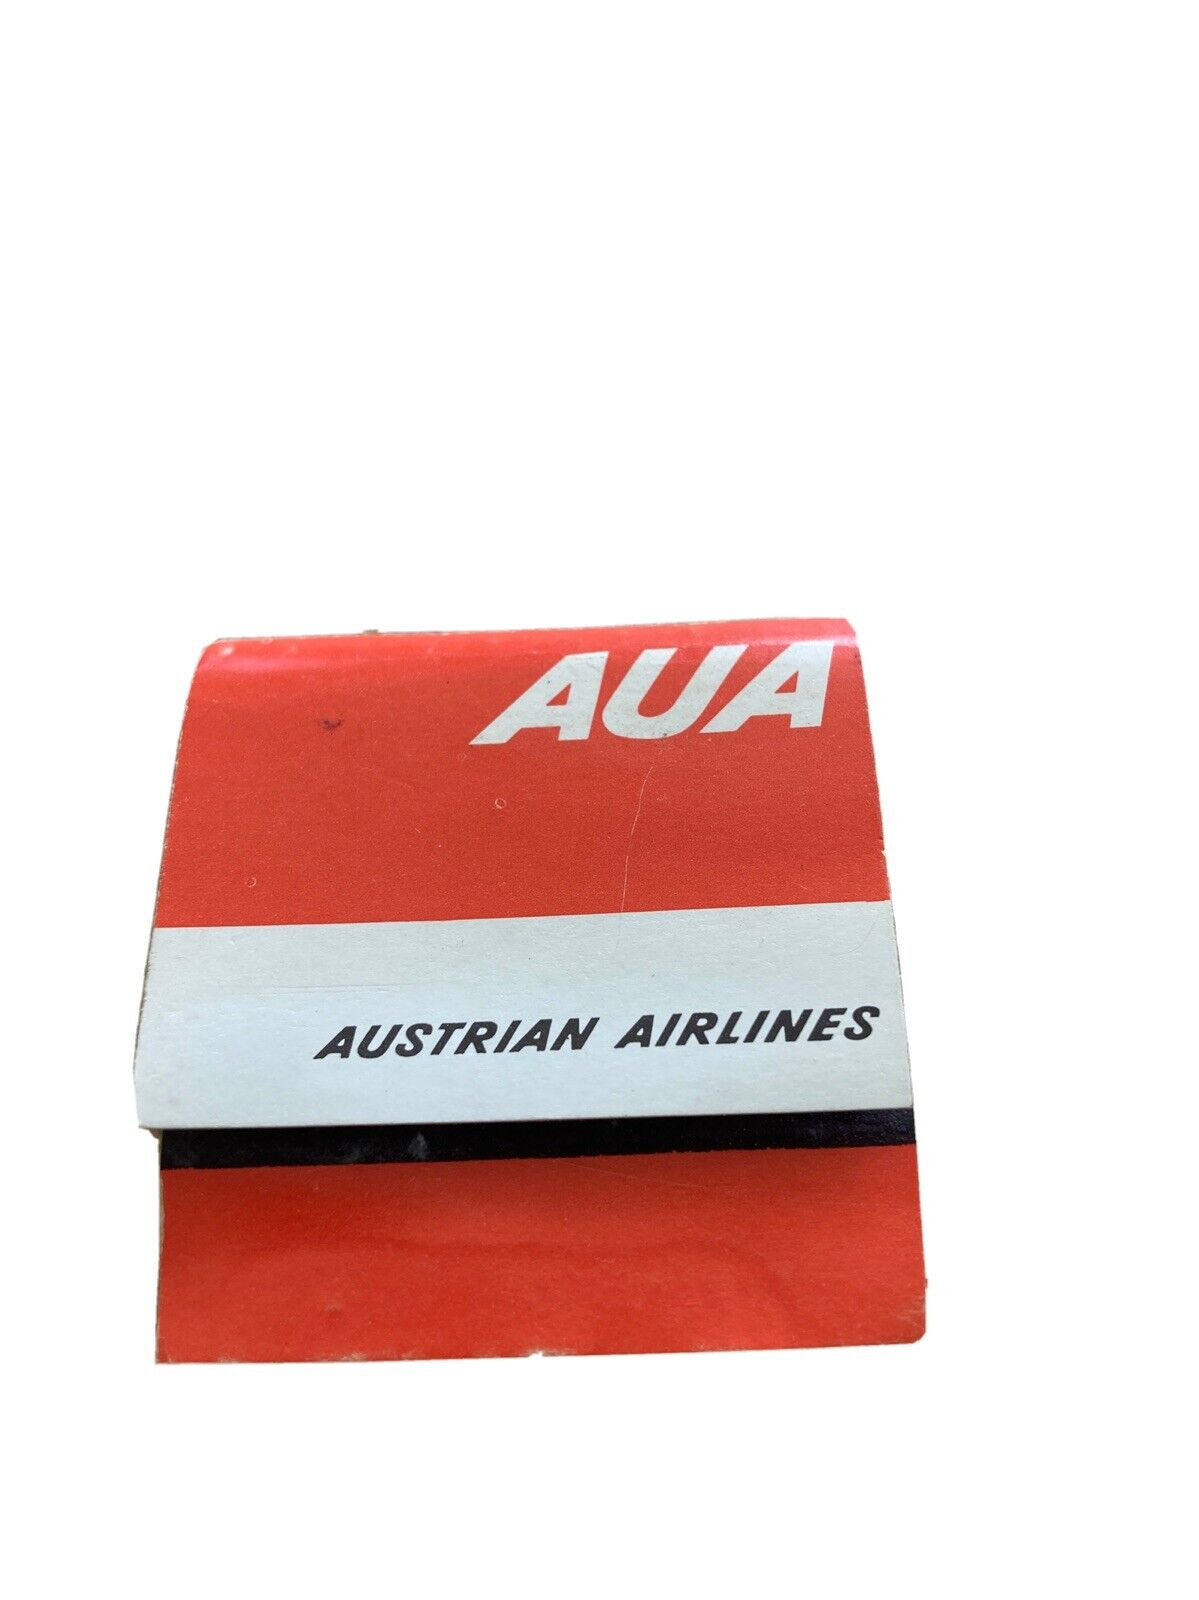 1960’s Austrian Airlines matchbook